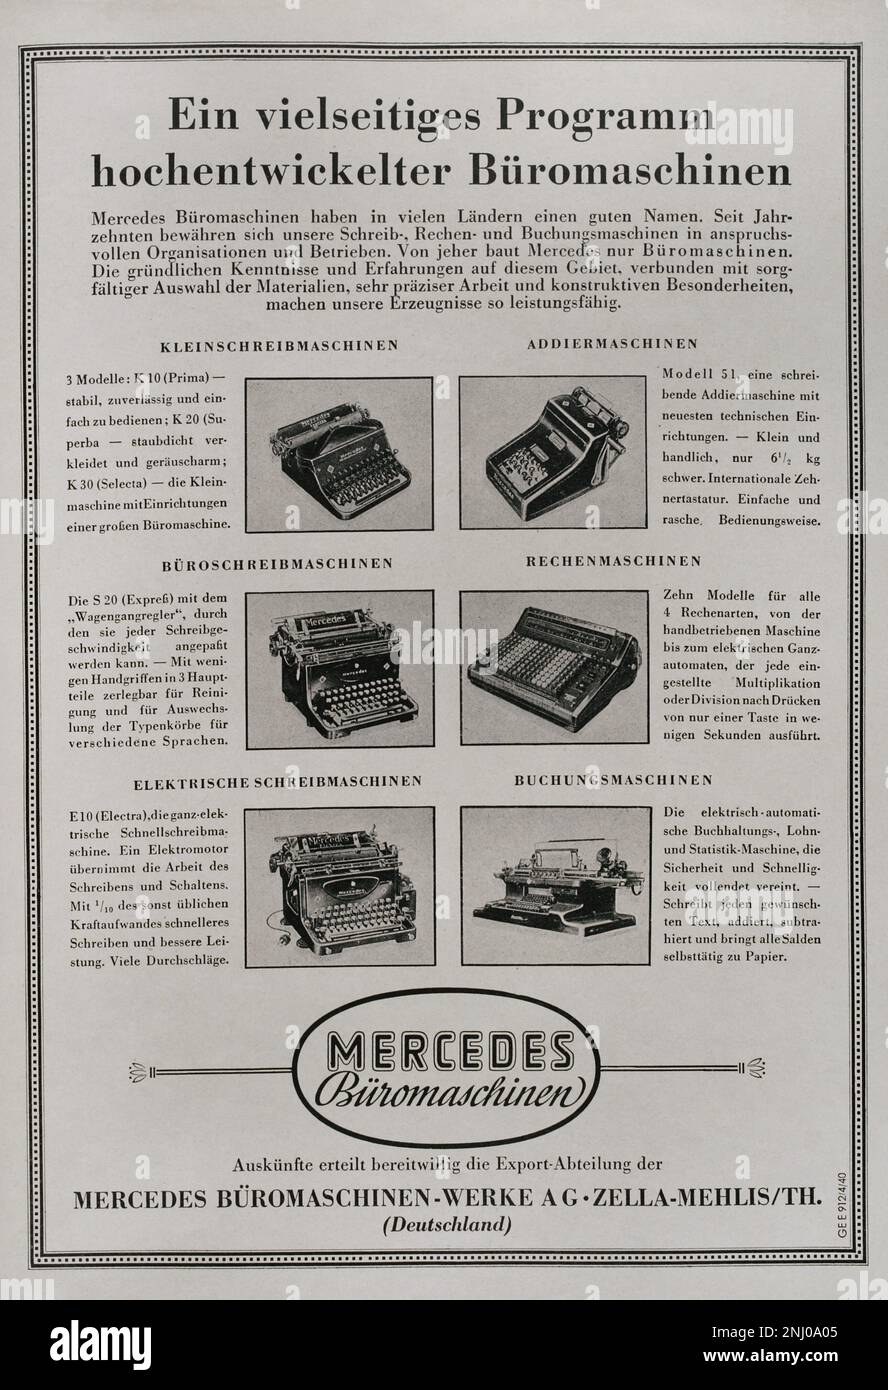 Publicité pour les machines de bureau Mercedes (Mercedes Bureau-Maschinen GmbH) sur l'une des pages intérieures du magazine 'Sigal', numéro 9 (10 août 1940) de l'édition germano-italienne. Ce magazine a été publié entre avril 1940 et avril 1945 et a été le principal organe de propagande de l'armée allemande pendant la Seconde Guerre mondiale. Banque D'Images